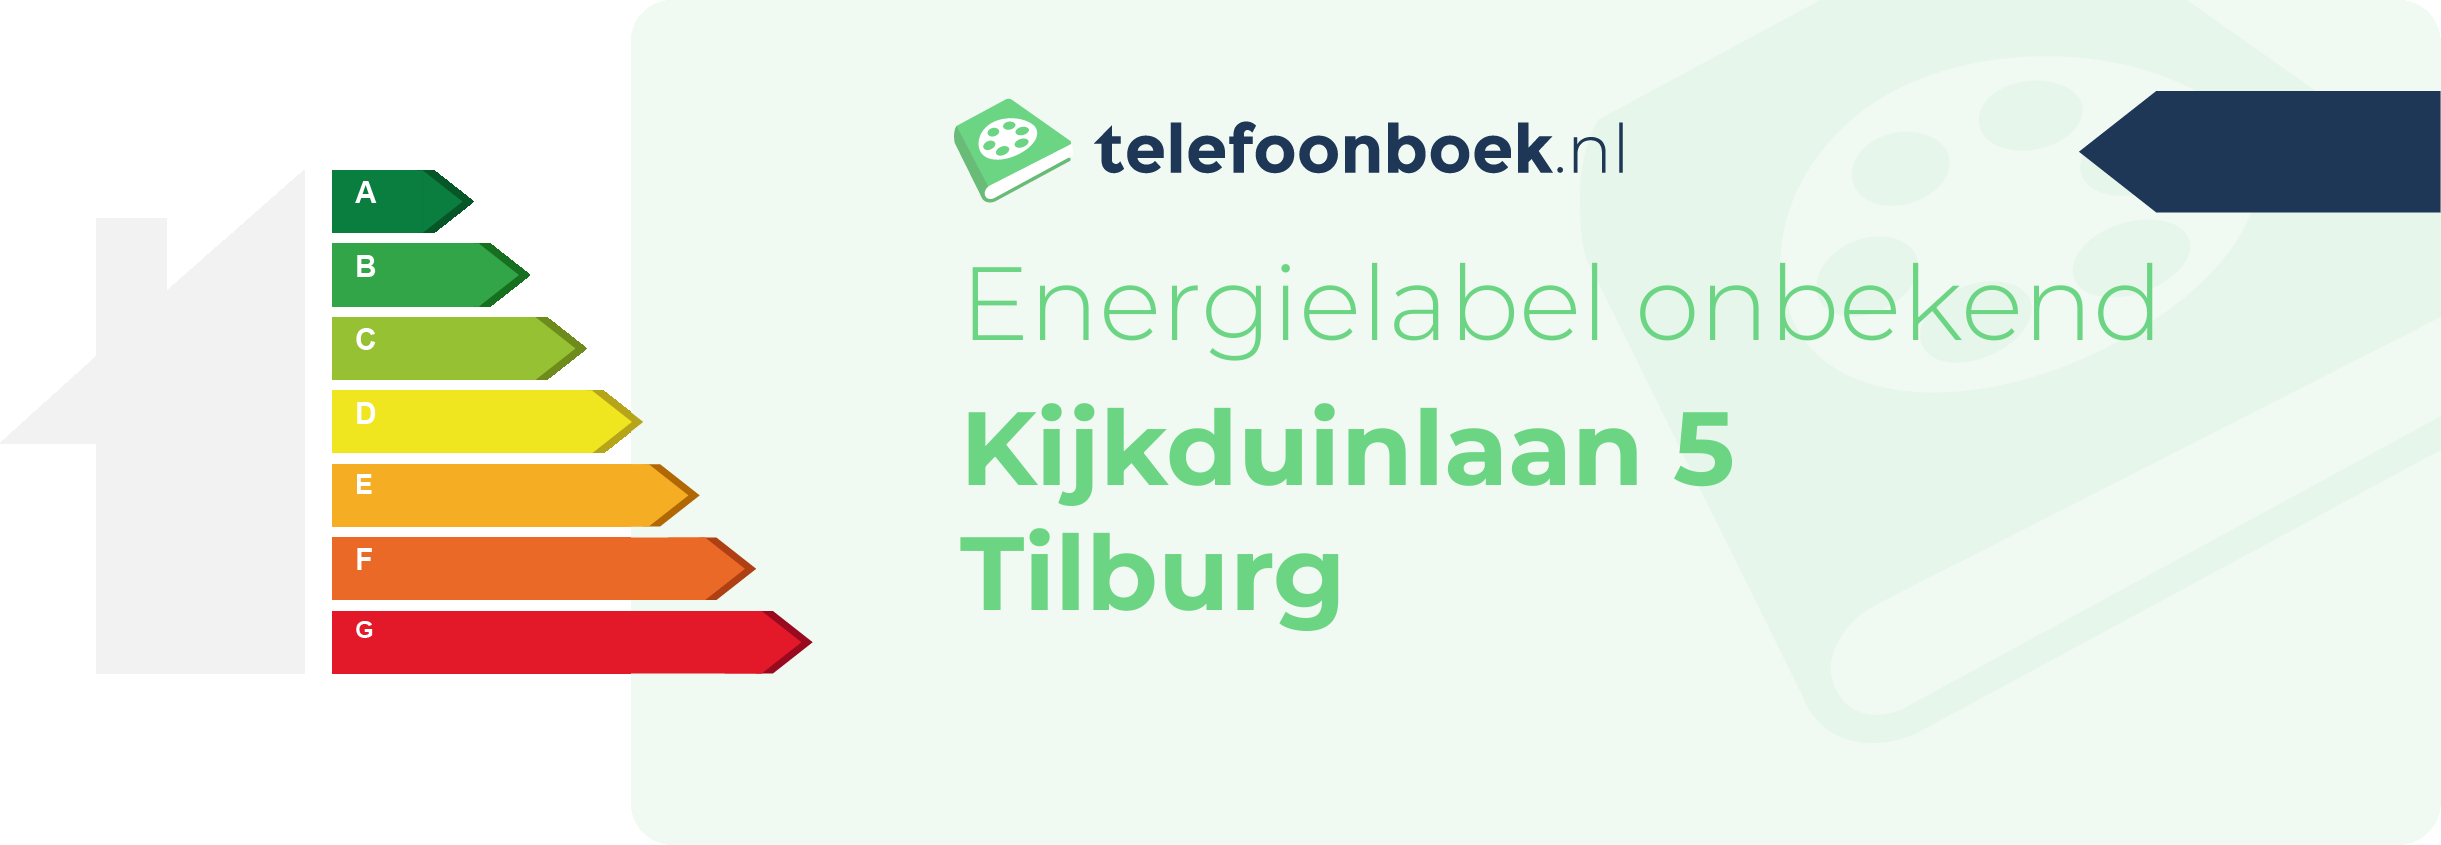 Energielabel Kijkduinlaan 5 Tilburg